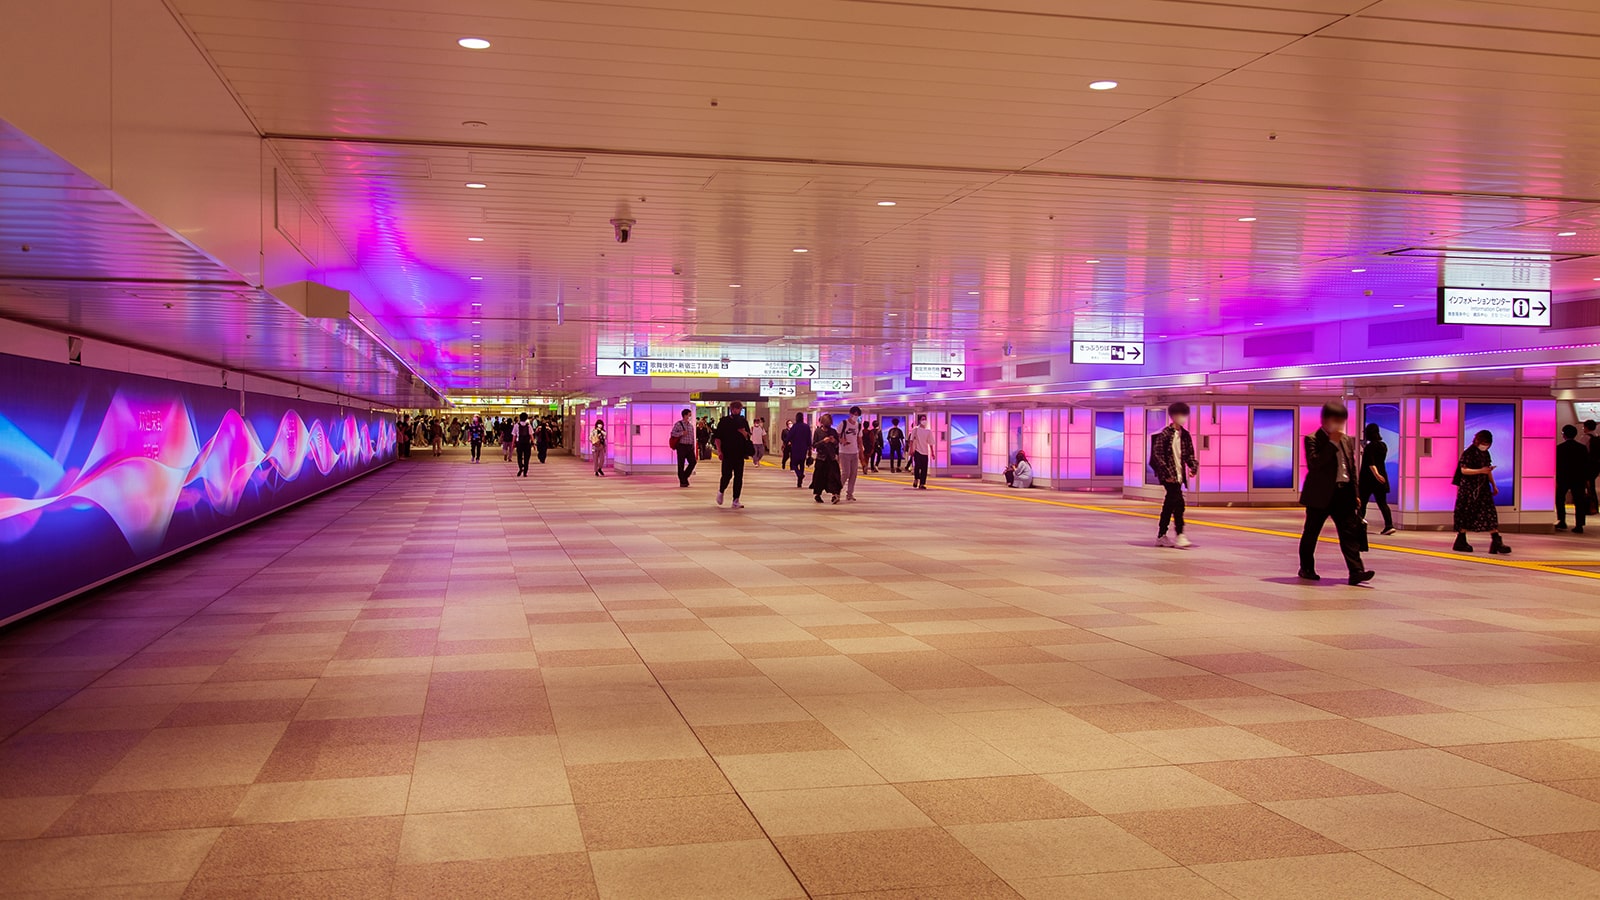 "TheColourBath ShinjukuStation Japan MomentFactory indiaartndesign"